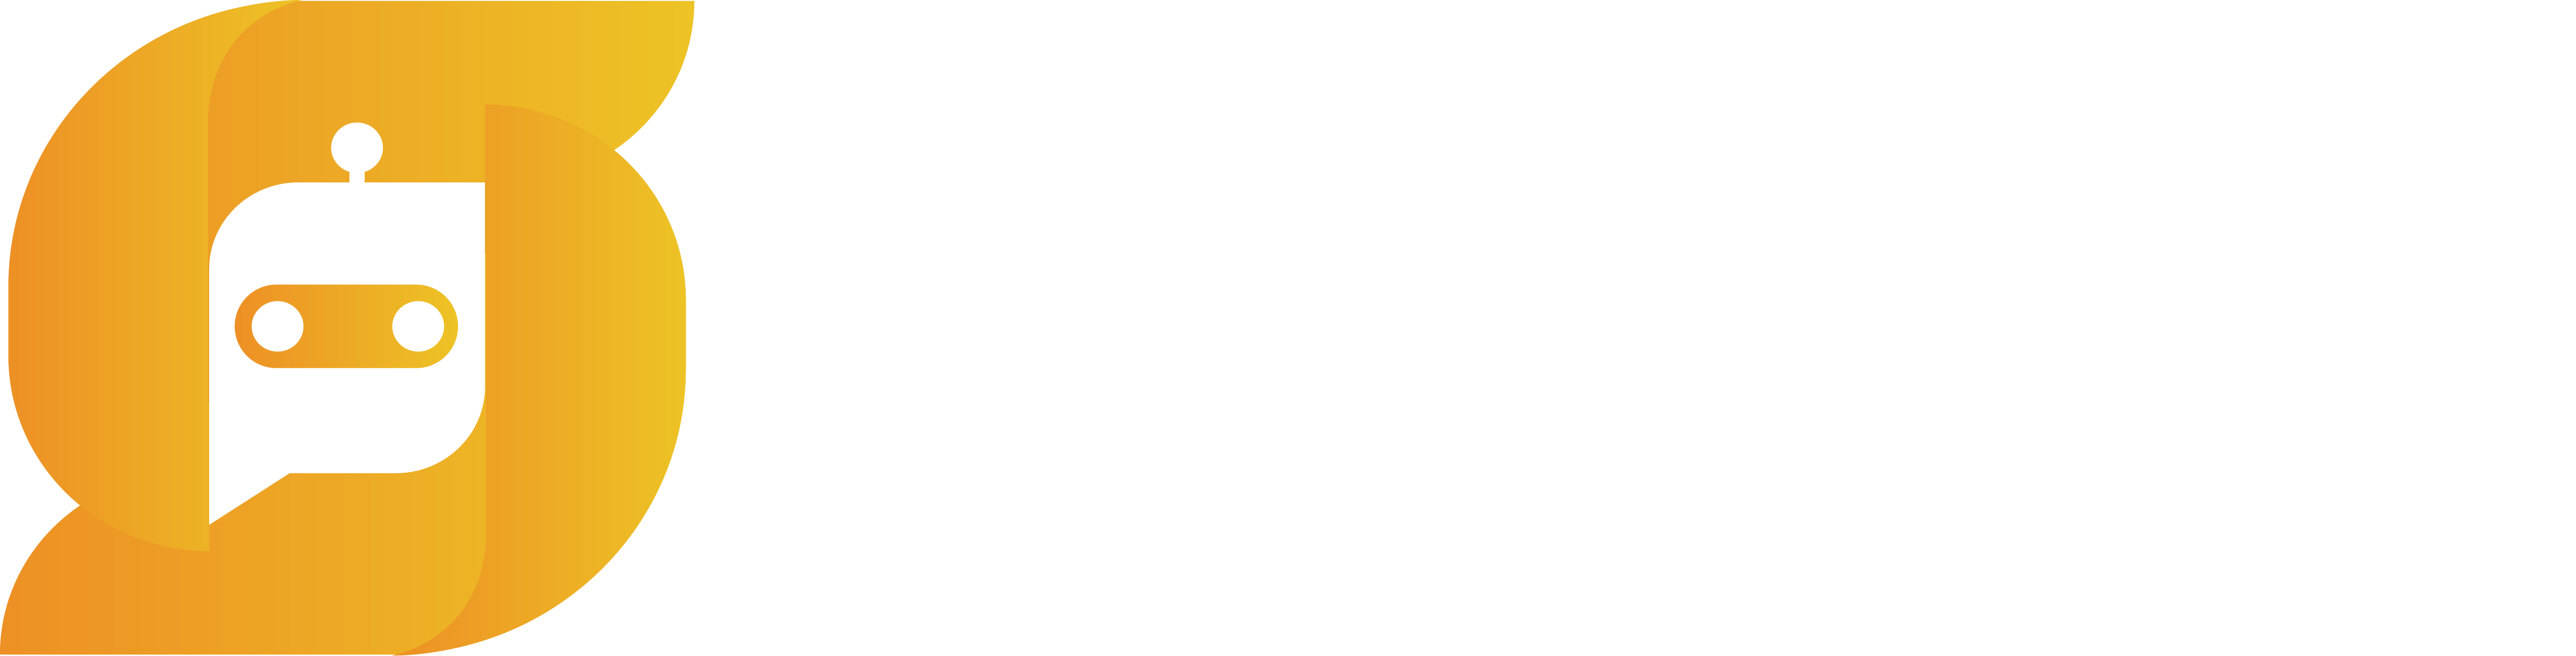 Segola.com